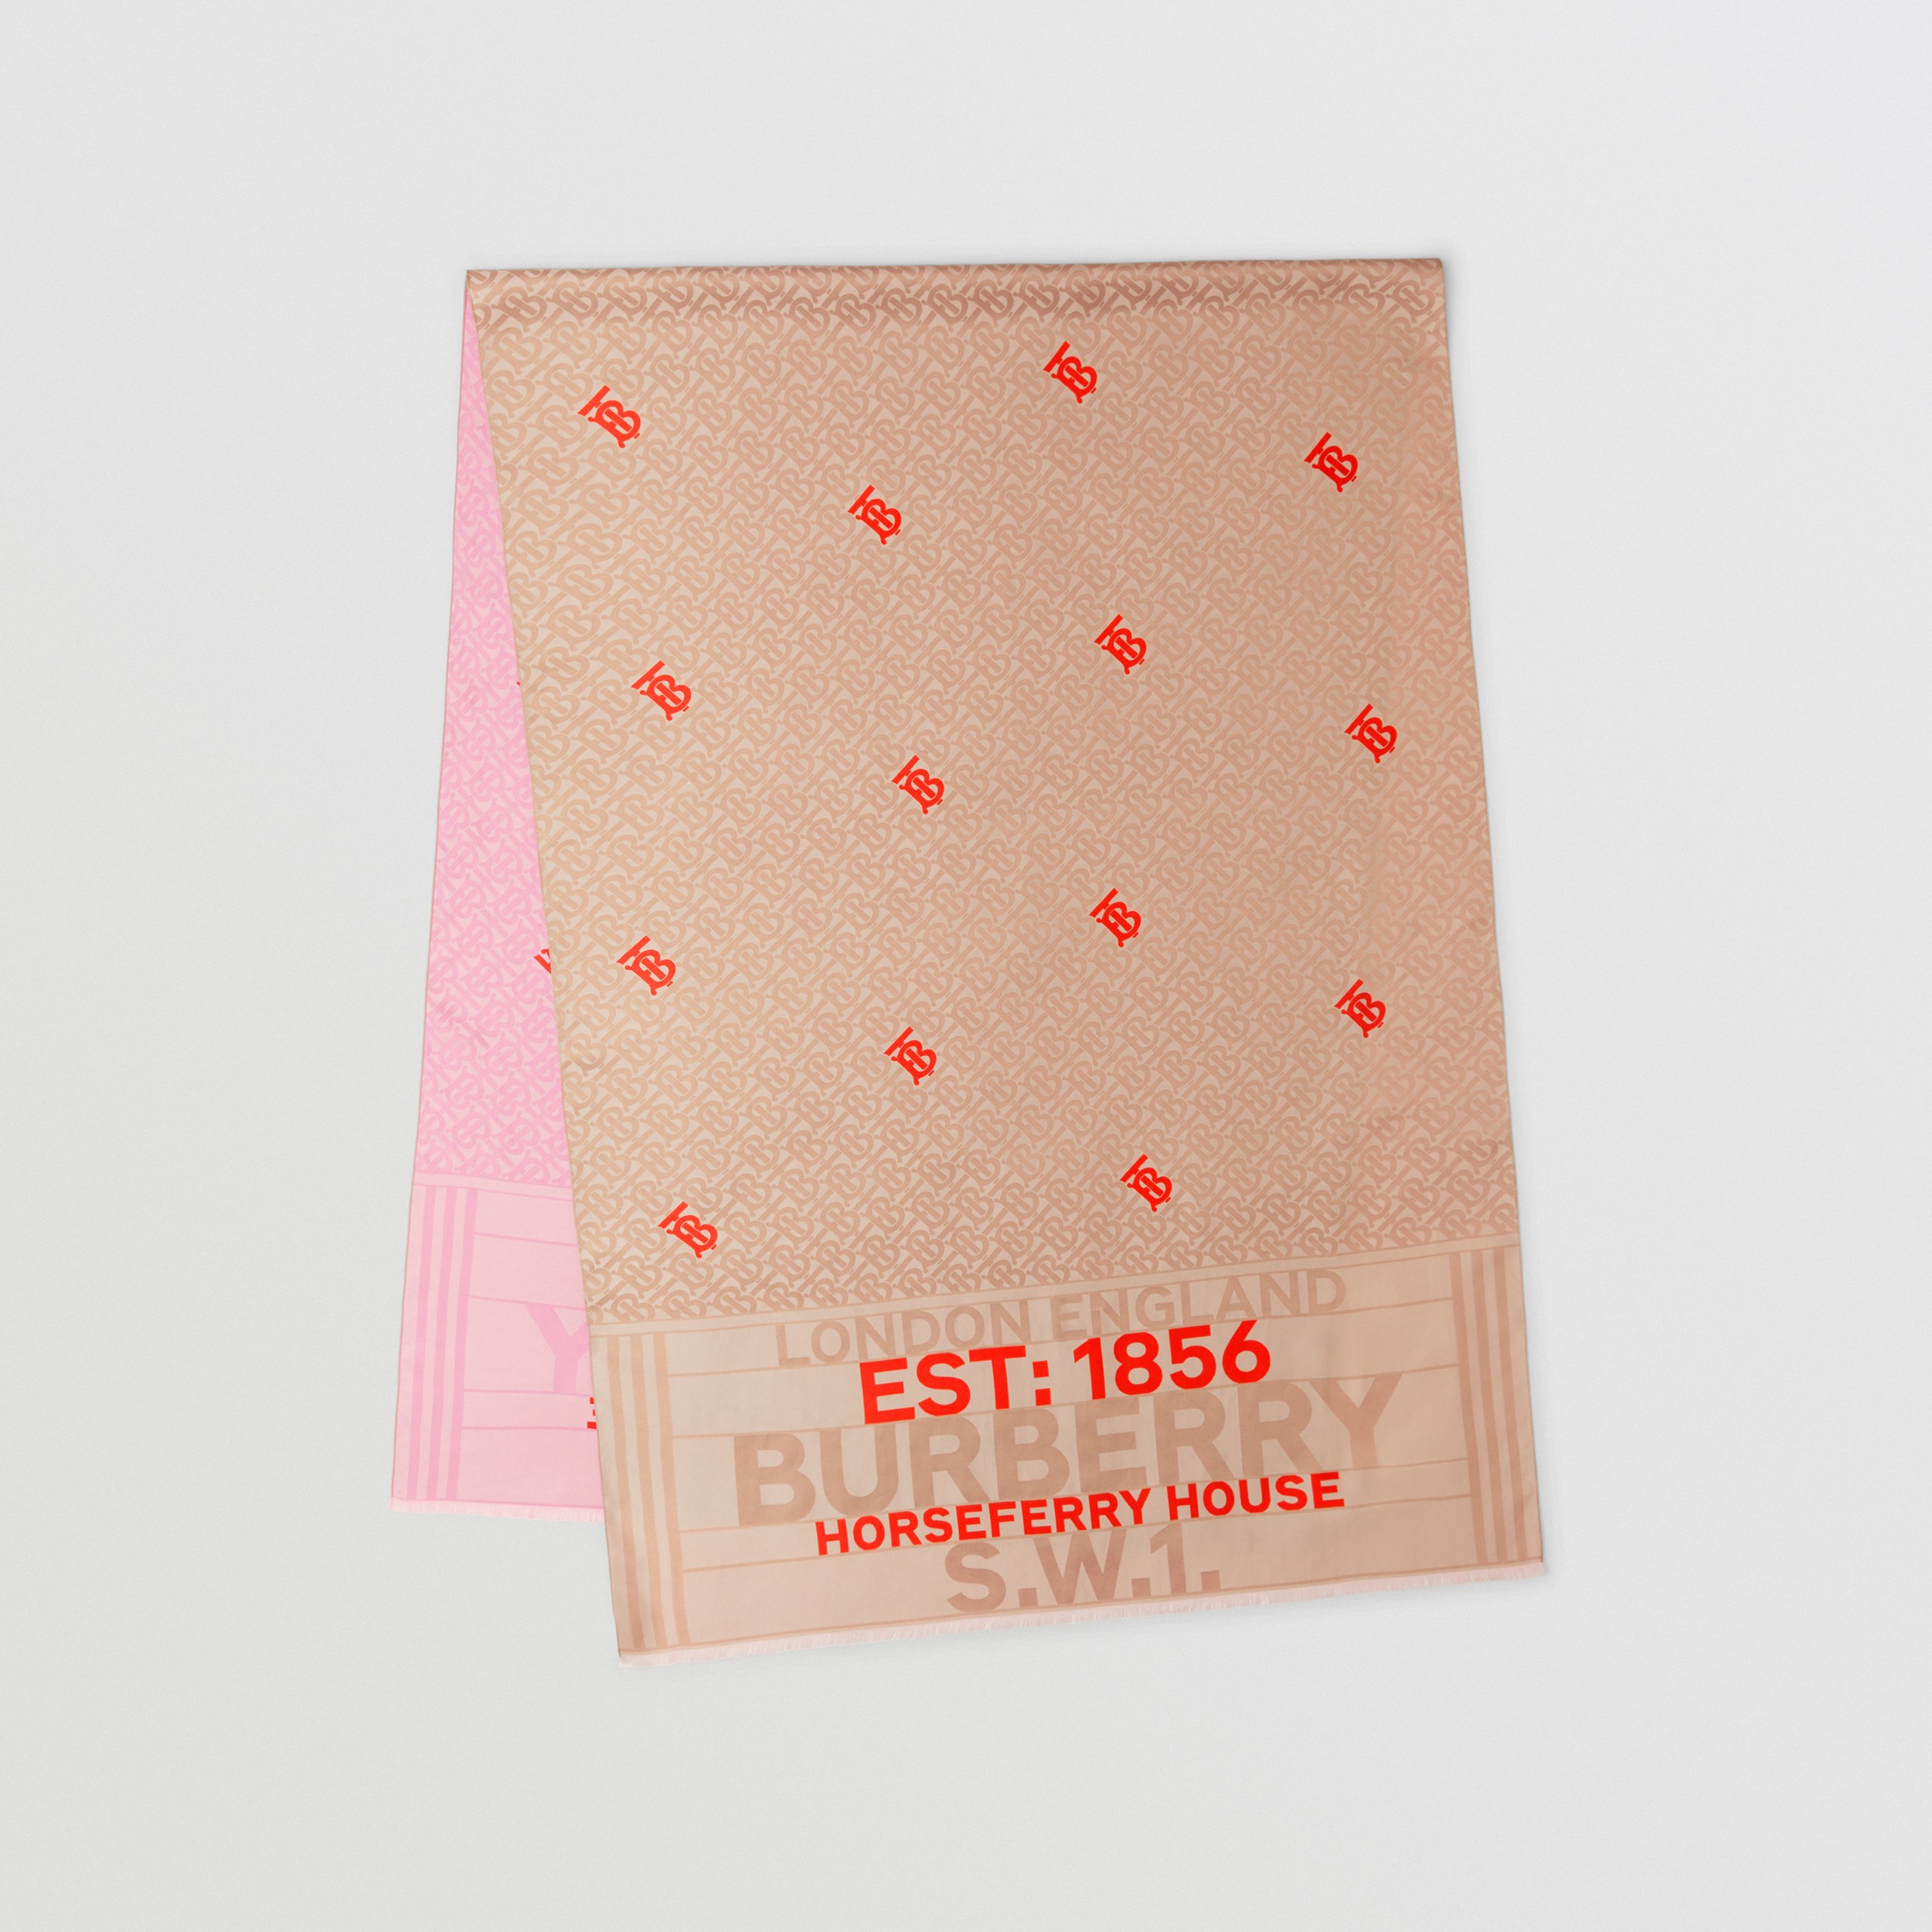 Pañuelo reversible en seda con monogramas (Rosa Beige Suave/rosa Pálido) | Burberry® oficial - 1